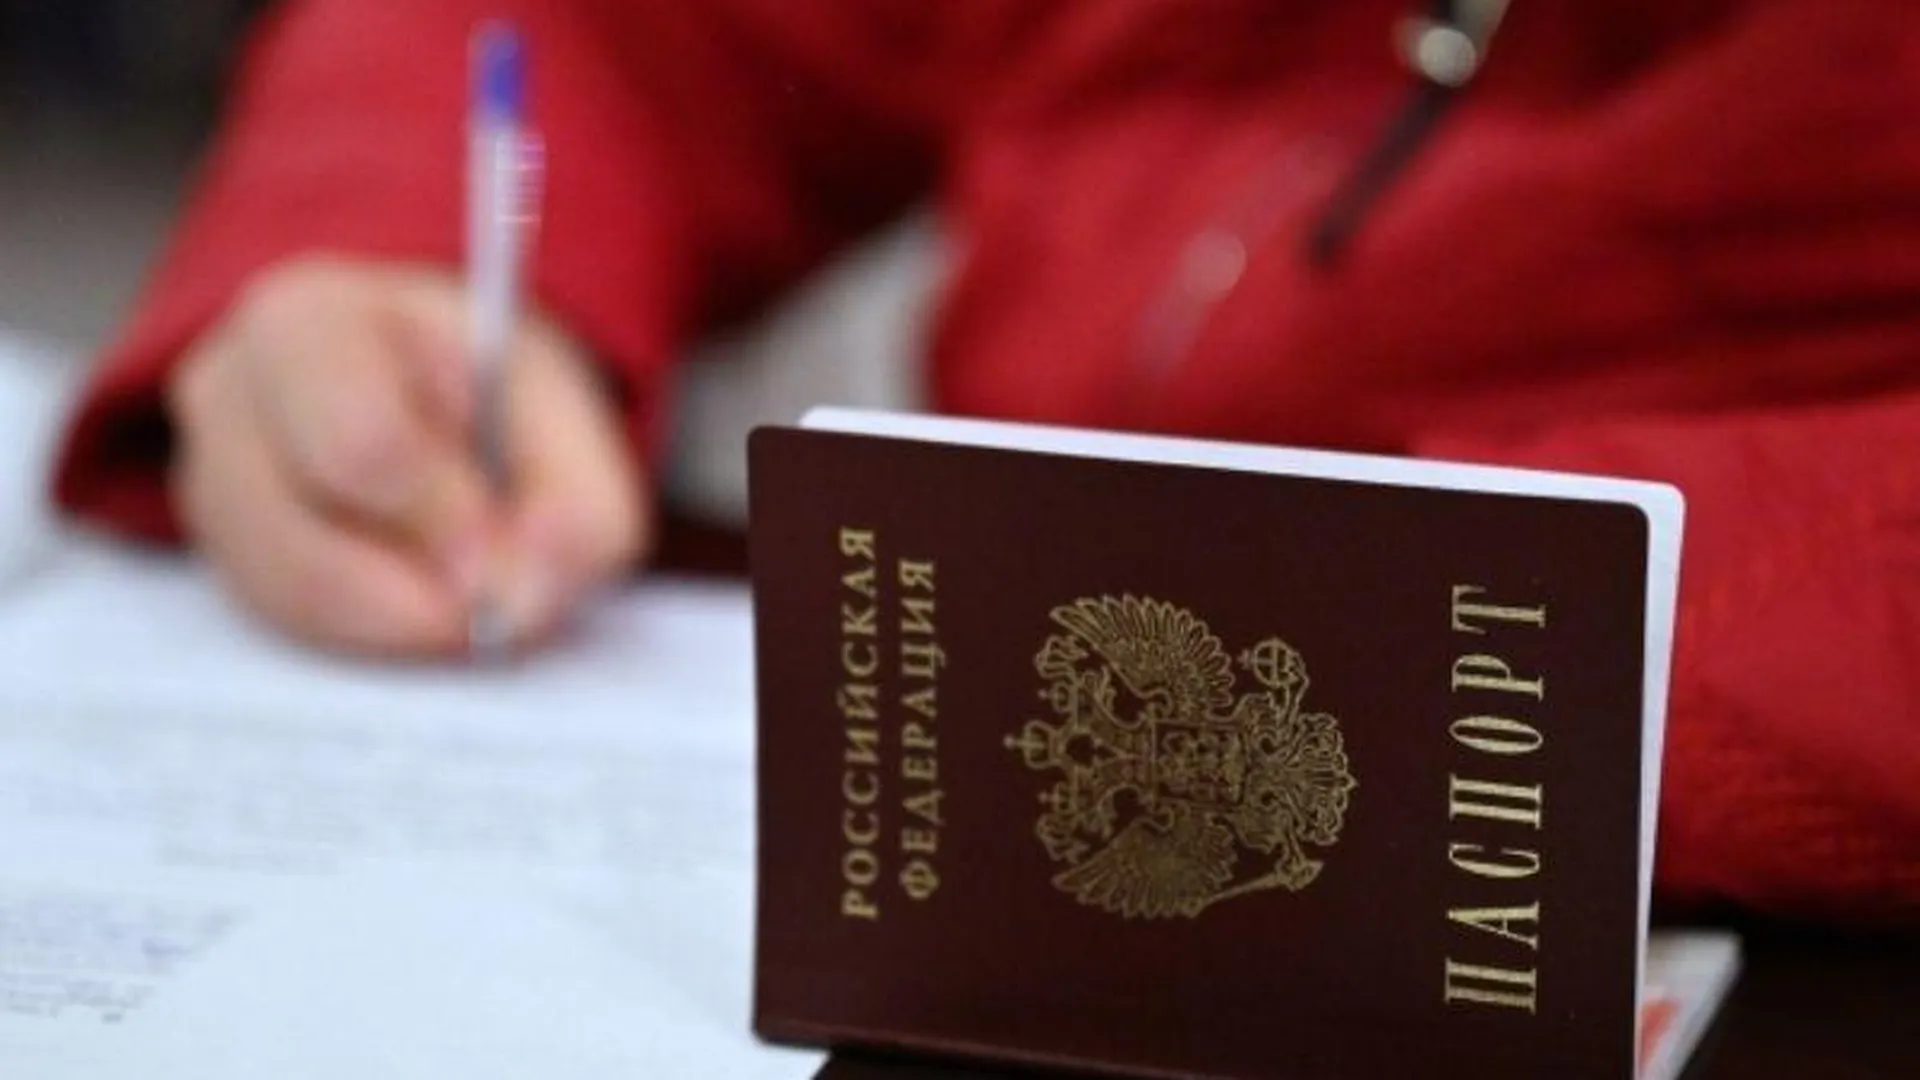 В России утечка персональных данных может стать основанием для замены паспорта